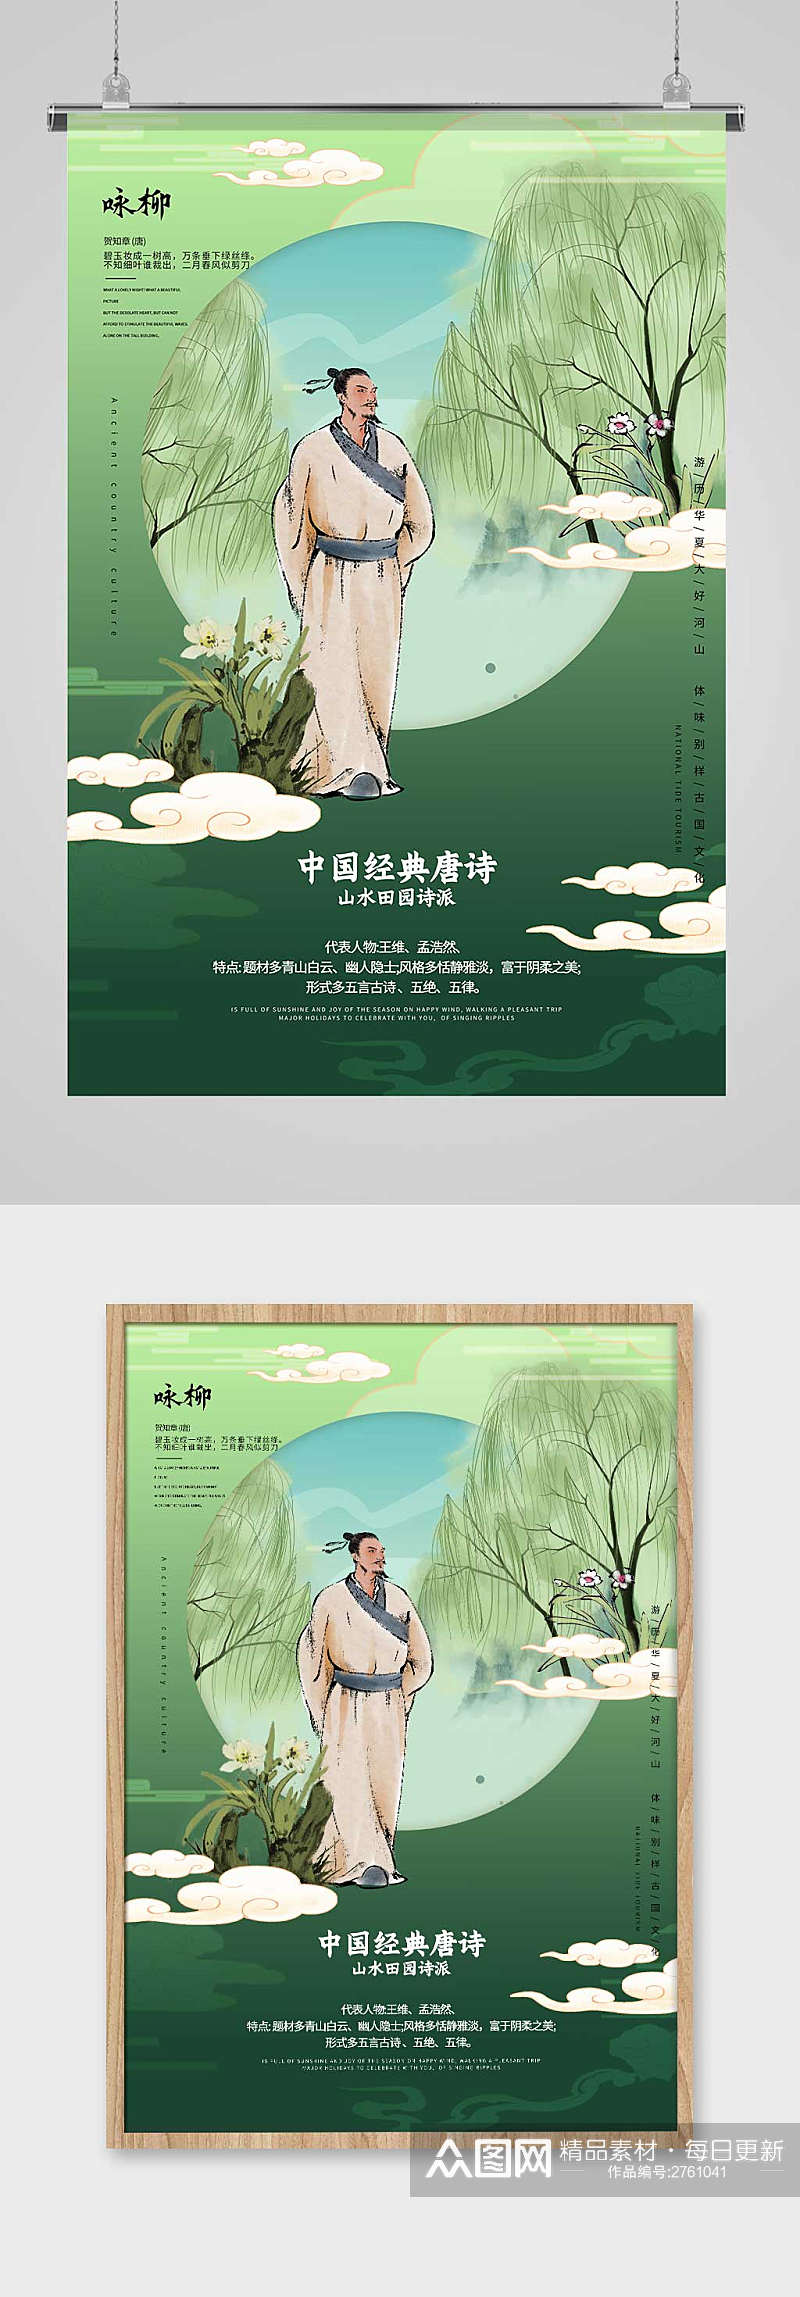 创意大气中国风唐诗咏柳宣传海报设计素材